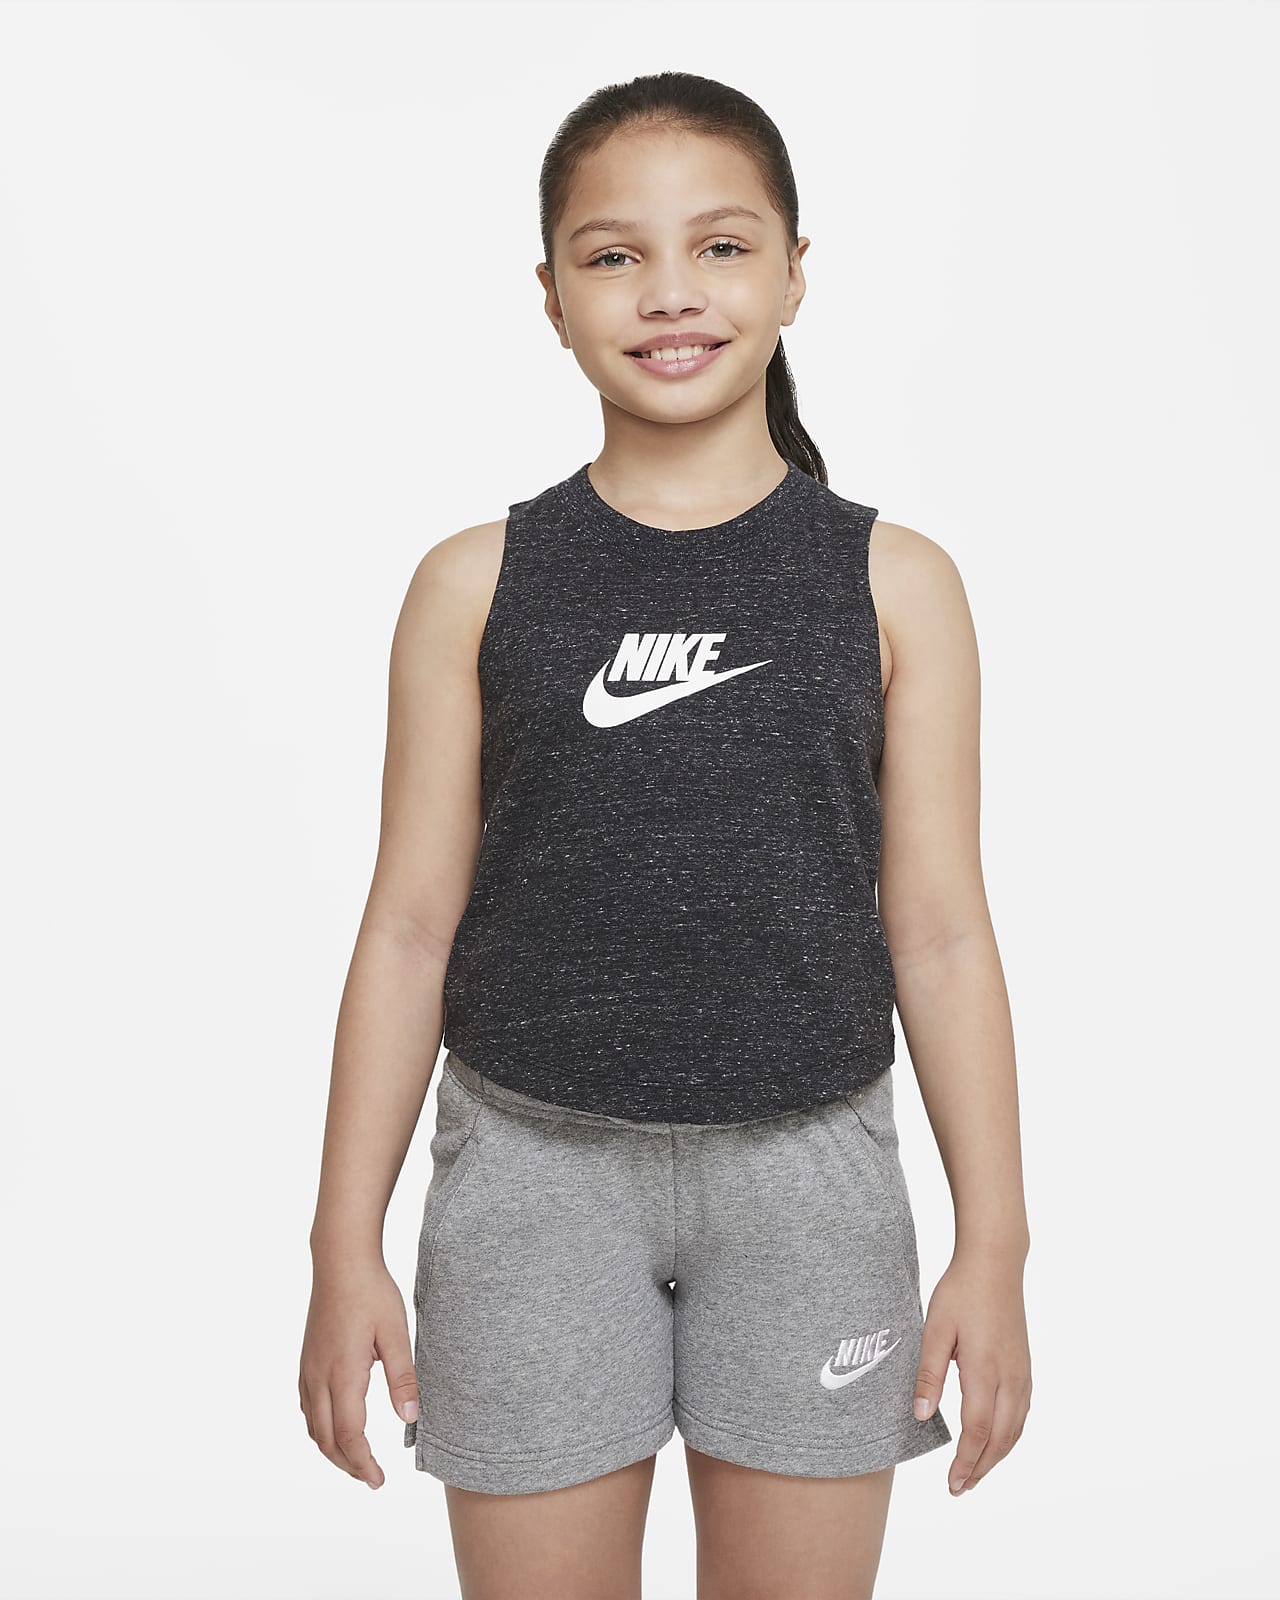 Nike Sportswear Older Kids' (Girls') Jersey Tank